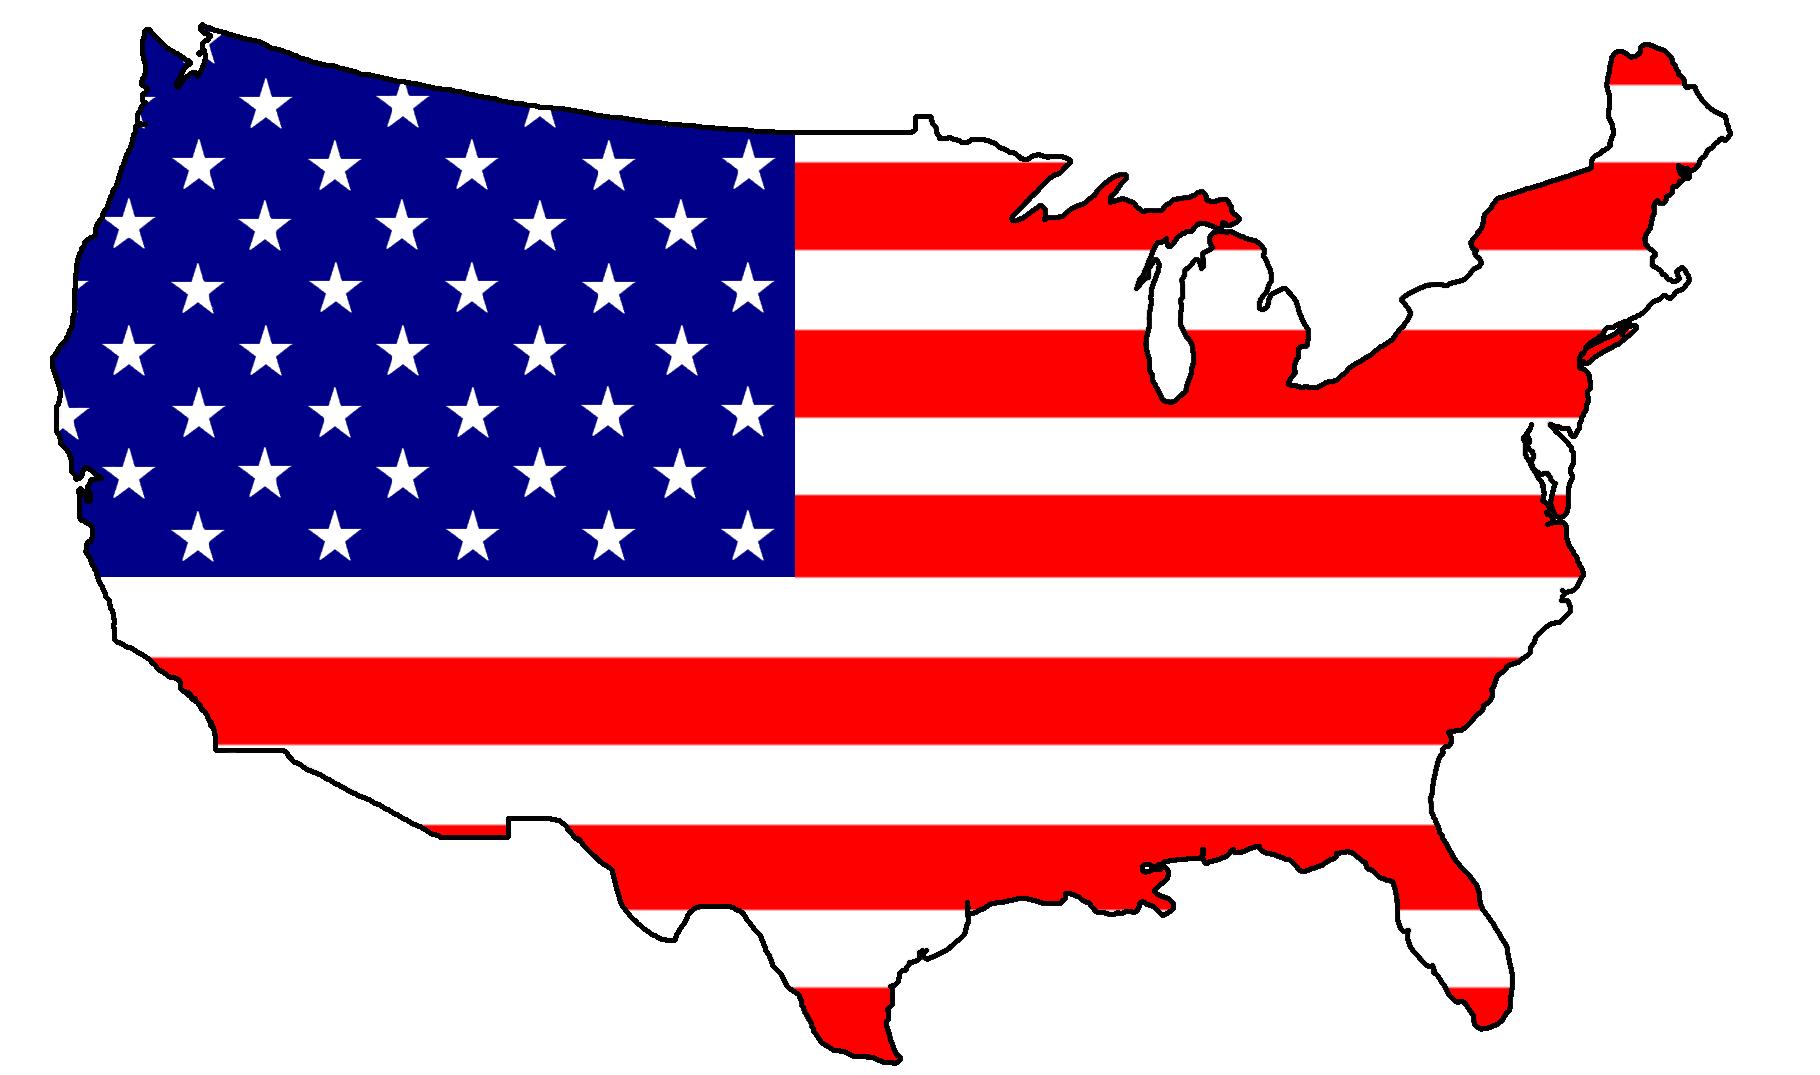 USA with flag image